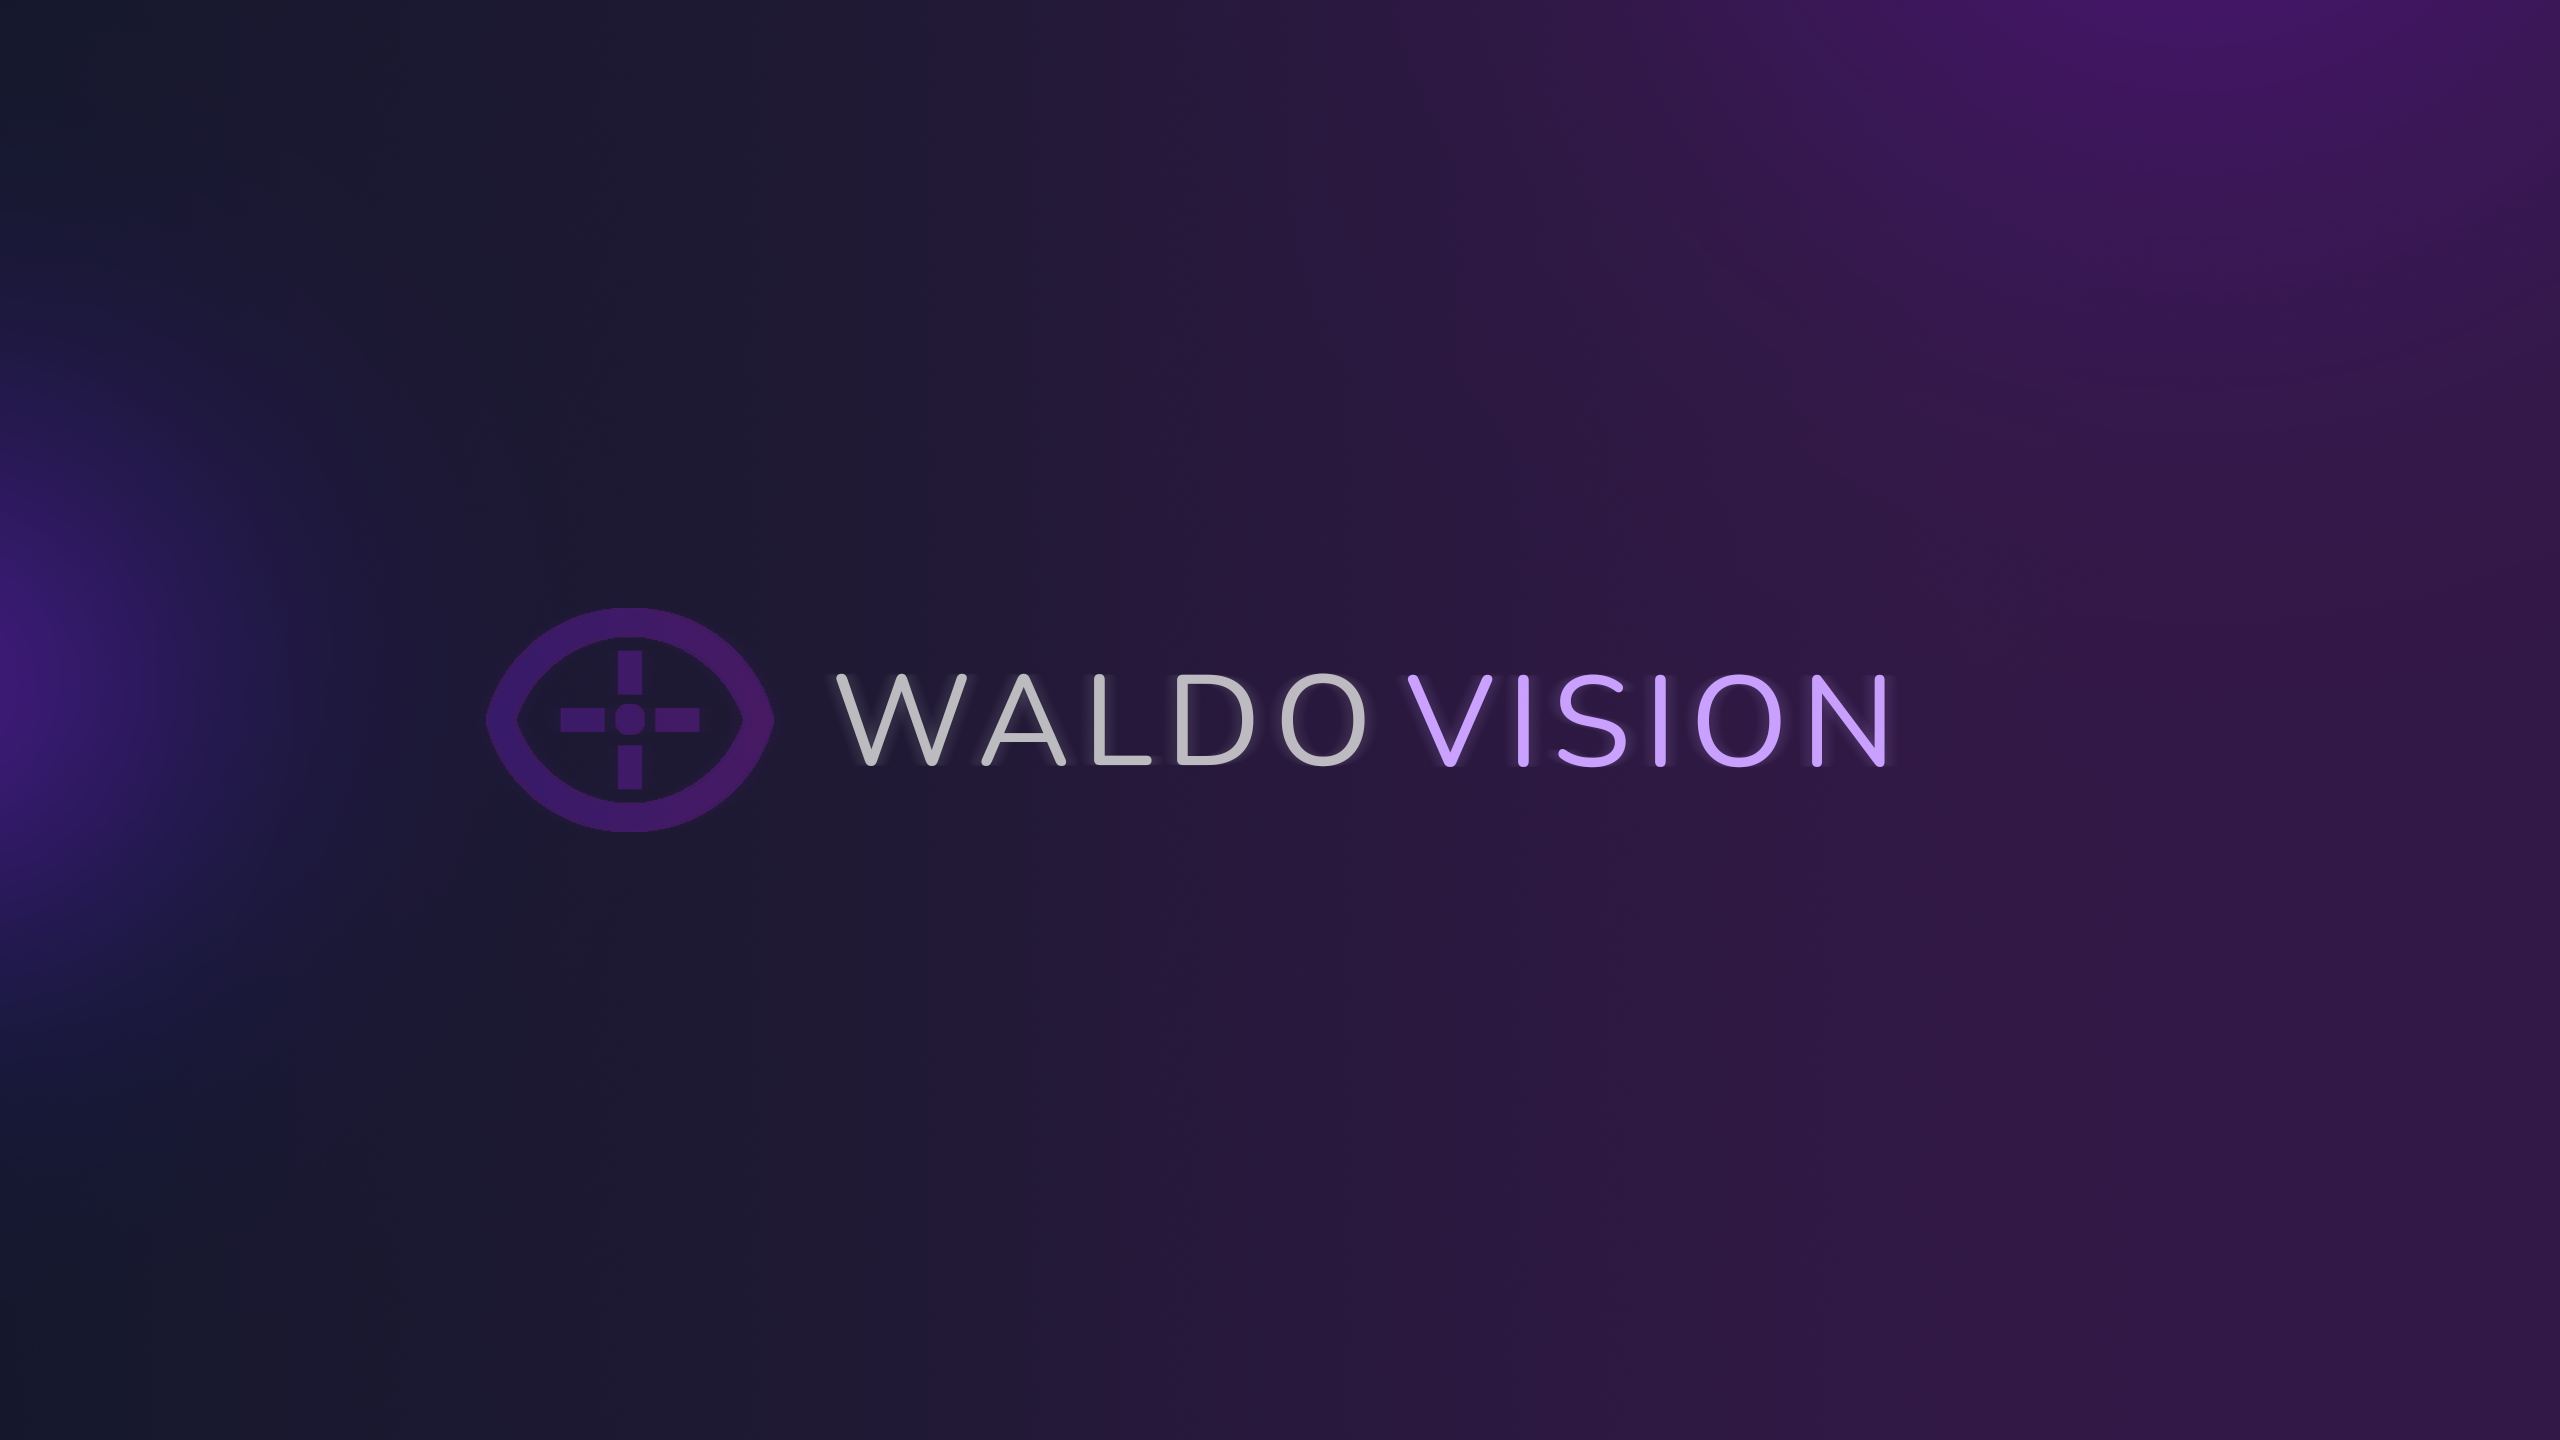 www.waldo.vision